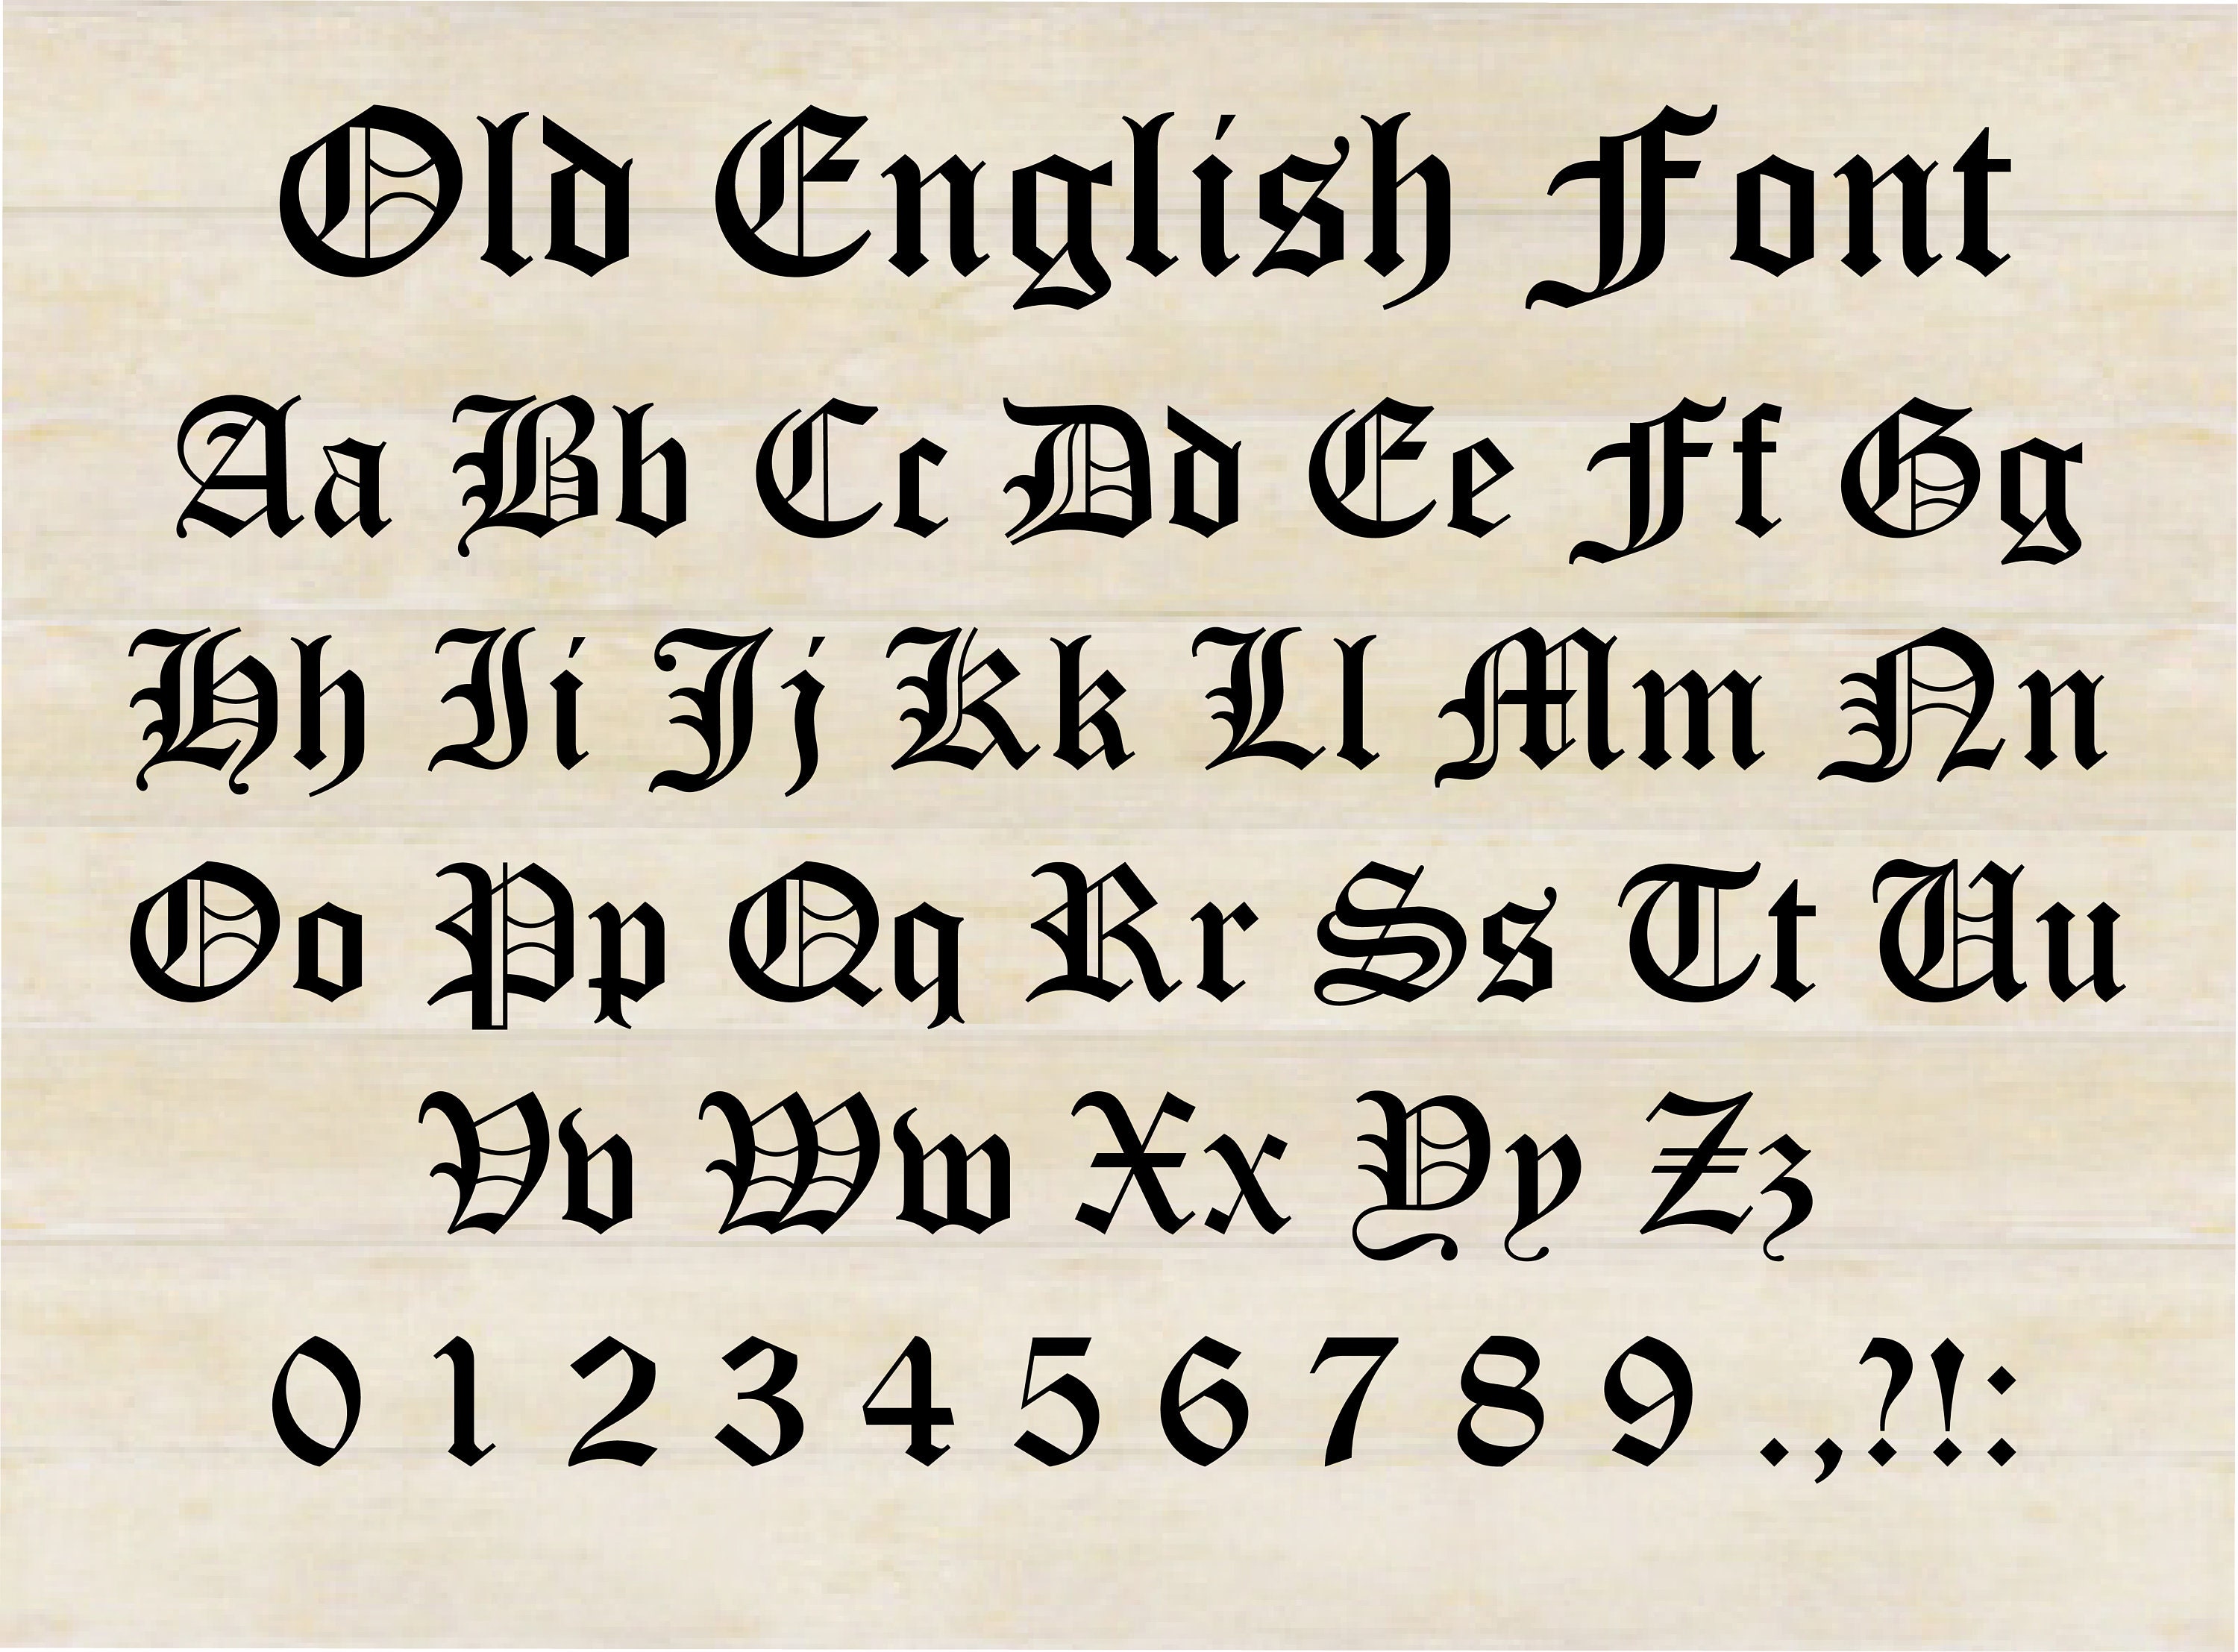 Old English Font Svg Old English Alphabet Old English Etsy Uk